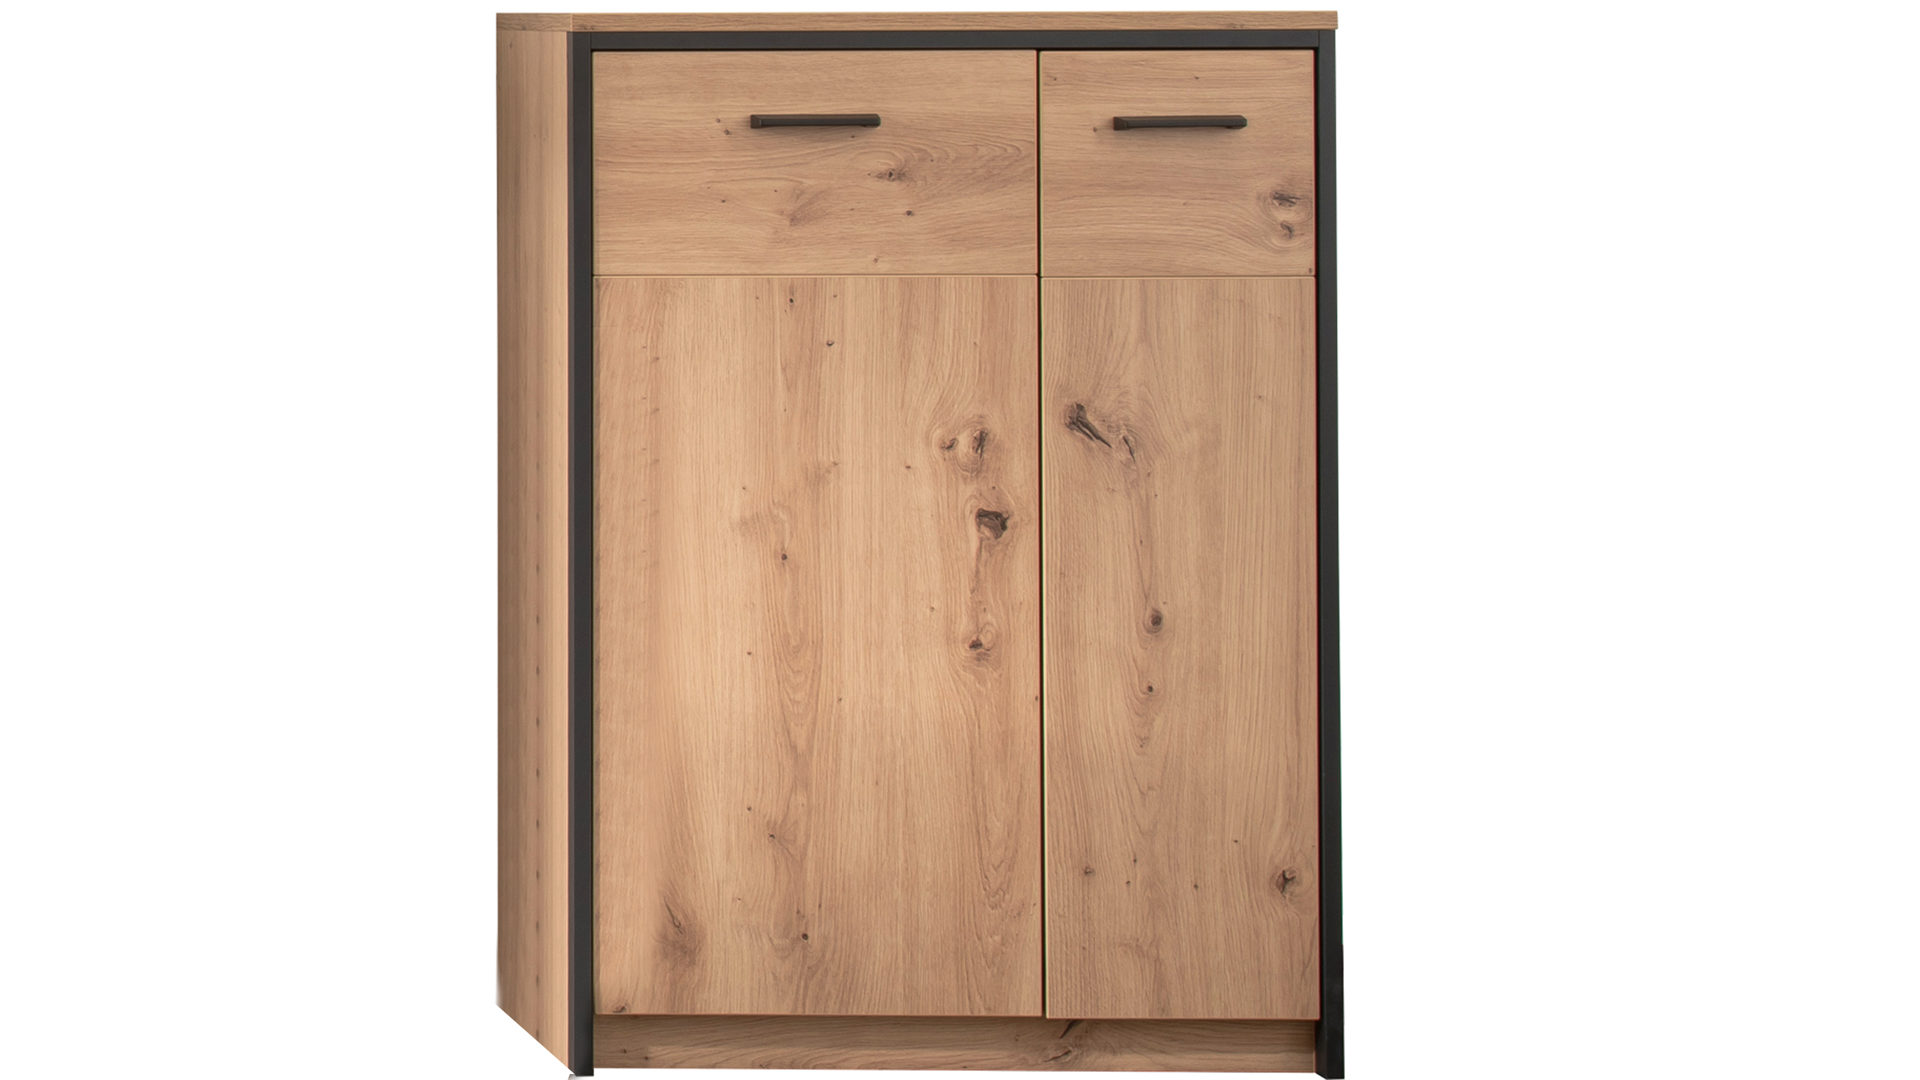 Türenkommode Mca furniture aus Holz in Holzfarben Garderobenserie Bergen – Türenkommode Balkeneiche & Anthrazit – zwei Türen